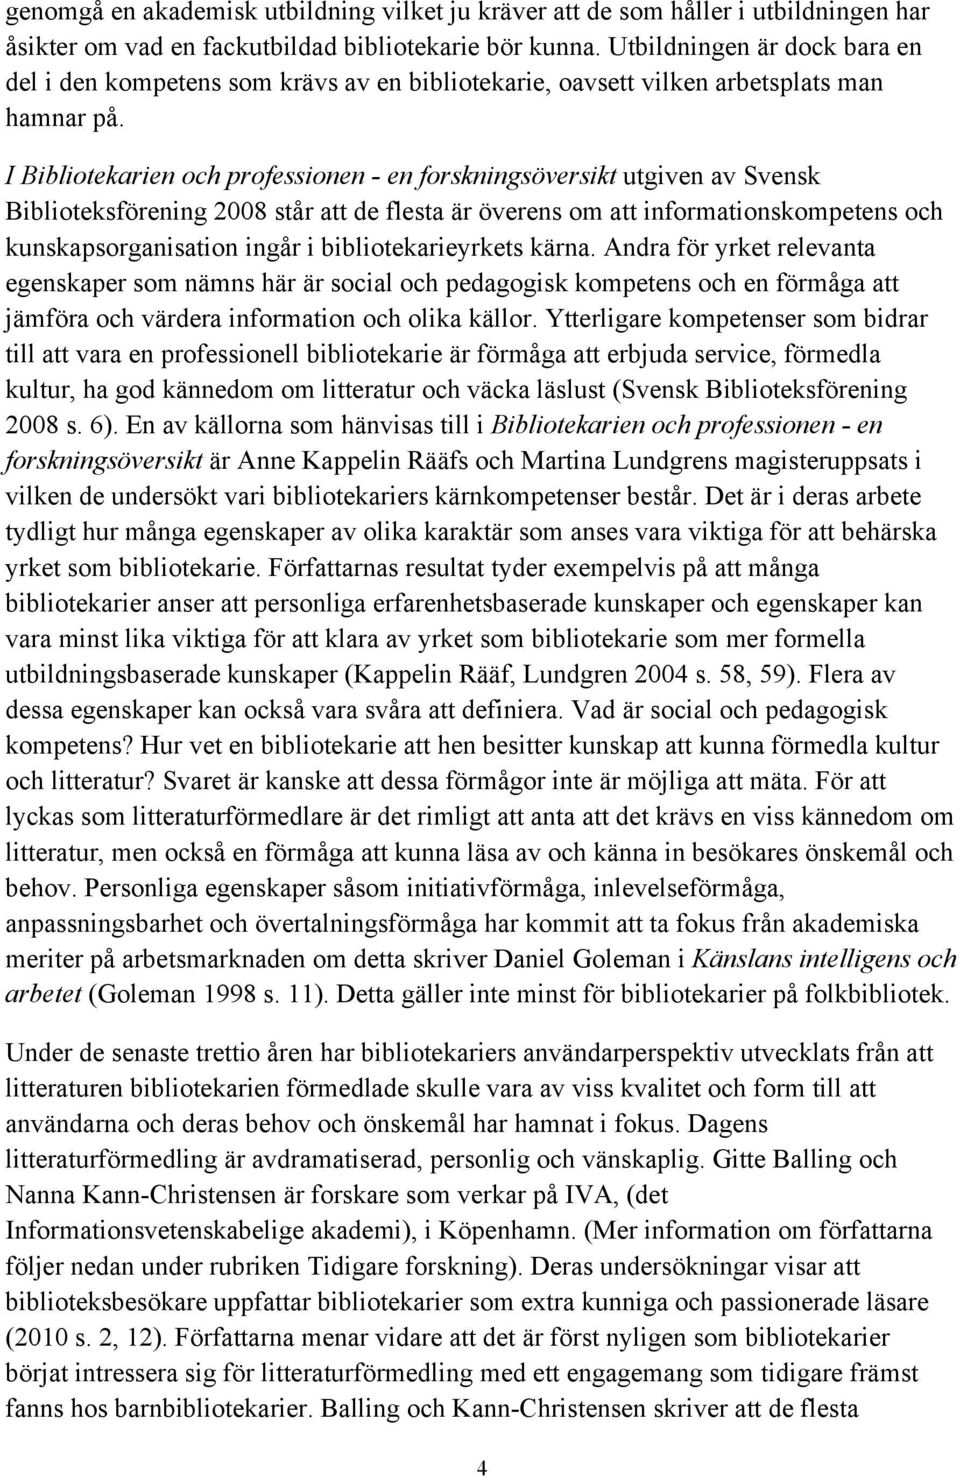 I Bibliotekarien och professionen - en forskningsöversikt utgiven av Svensk Biblioteksförening 2008 står att de flesta är överens om att informationskompetens och kunskapsorganisation ingår i